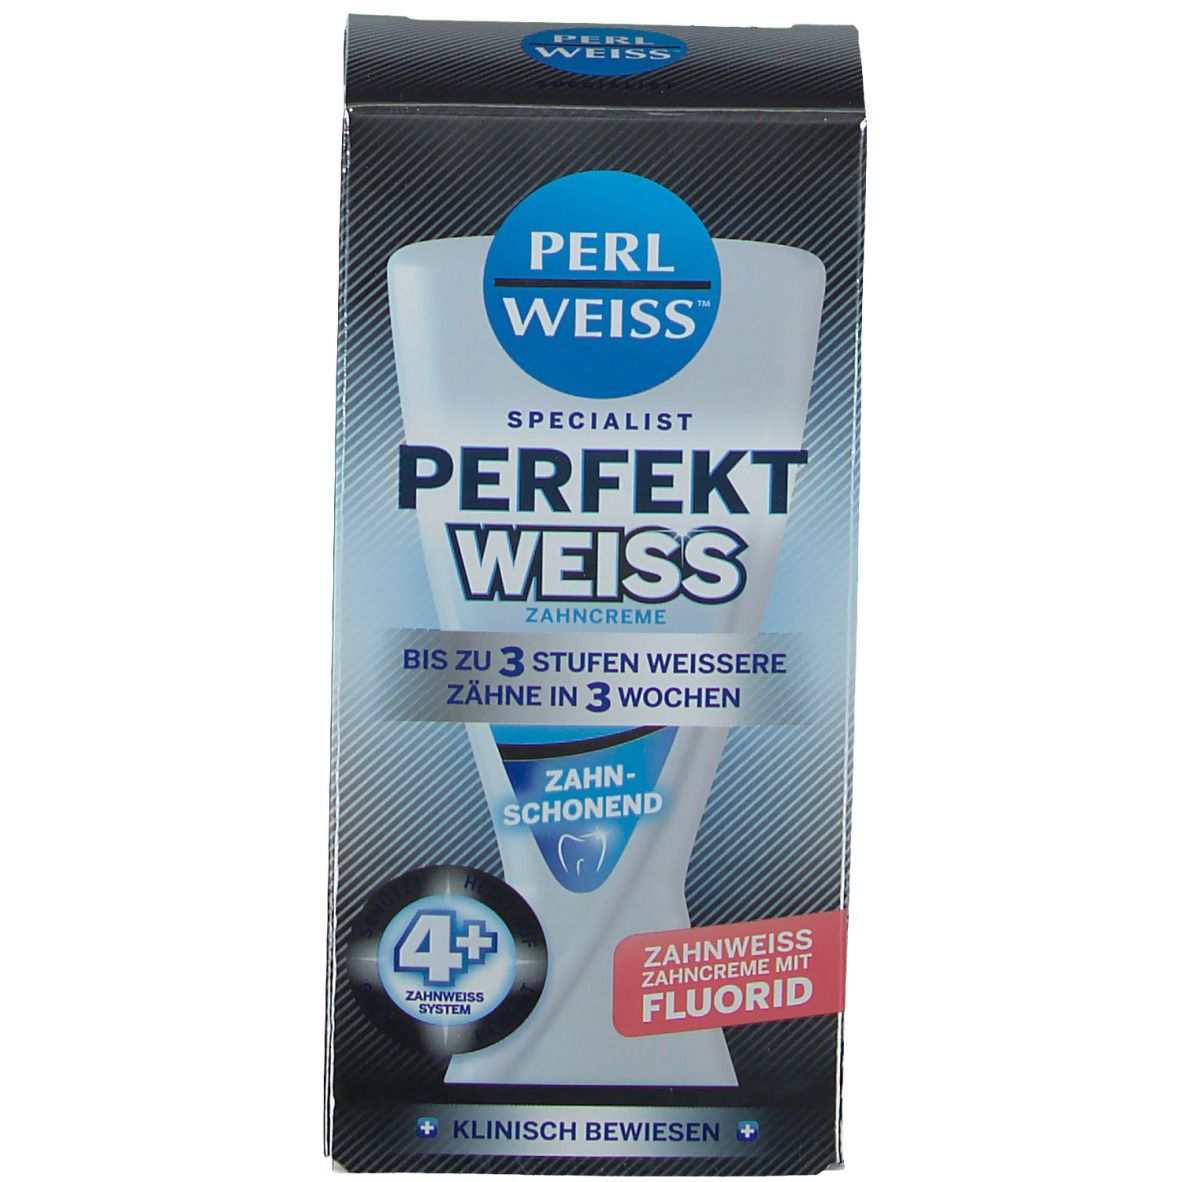 PERLWEISS® Perfekt Weiss